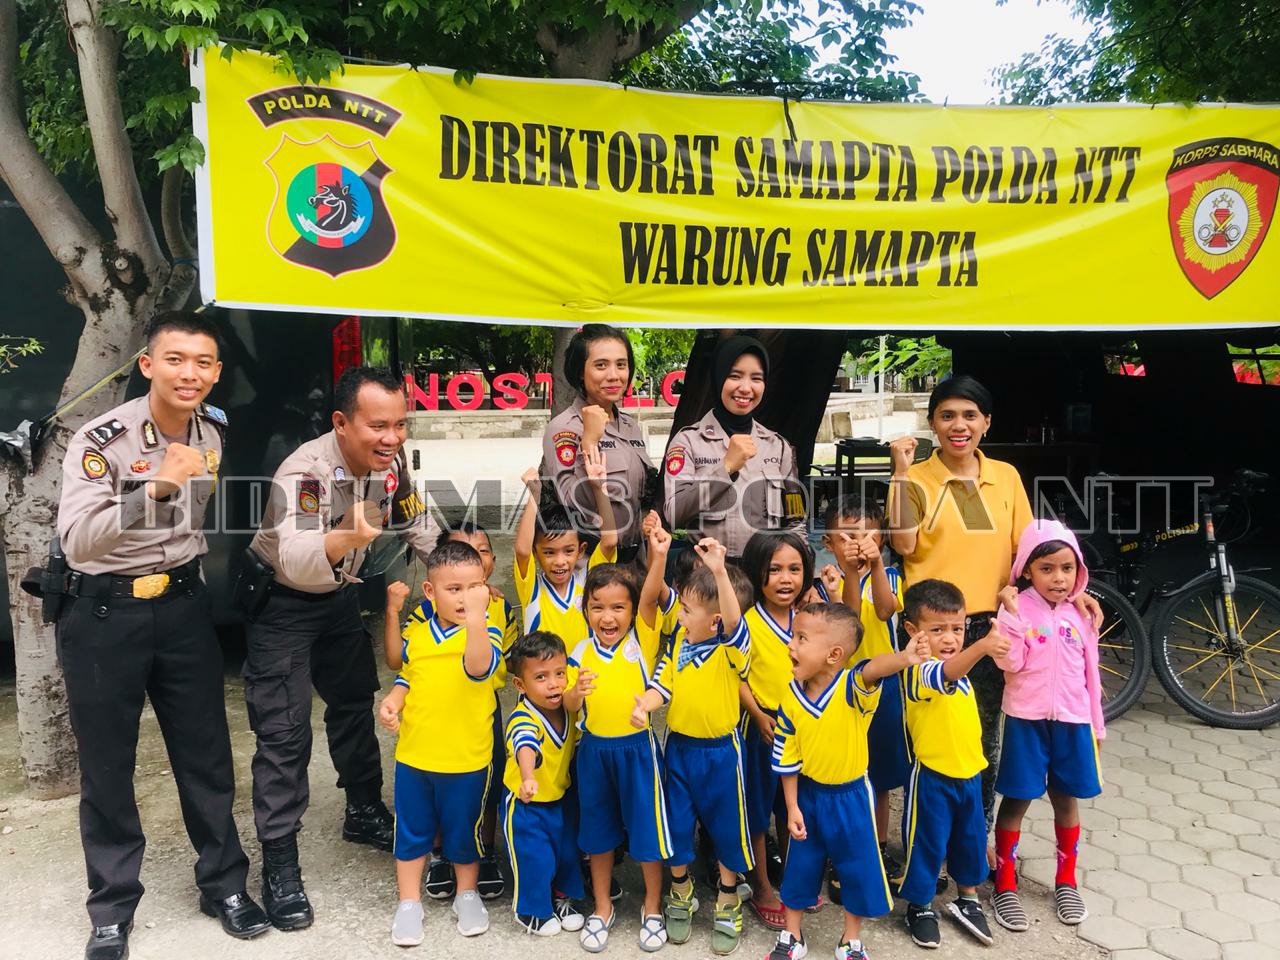 Warung Samapta Ditsamapta Polda NTT mendapat kunjungan istimewa dari Anak-anak Paud Pelita Nusa